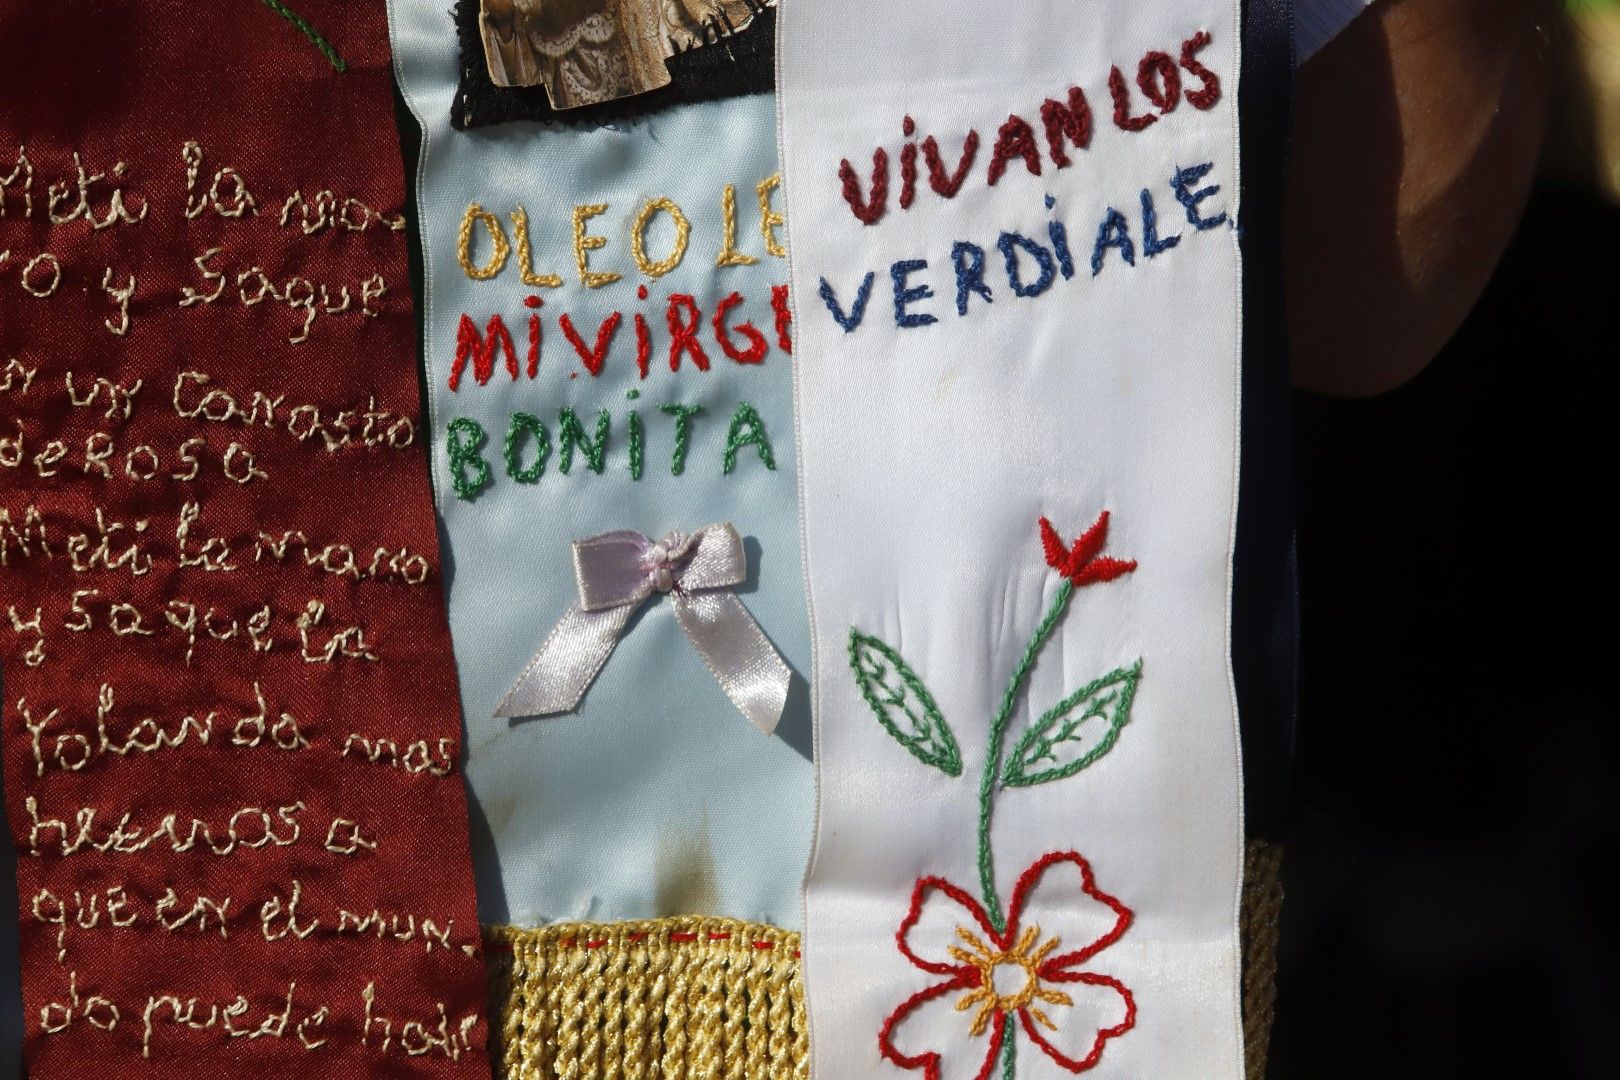 Fiesta de verdiales en Málaga (2022)